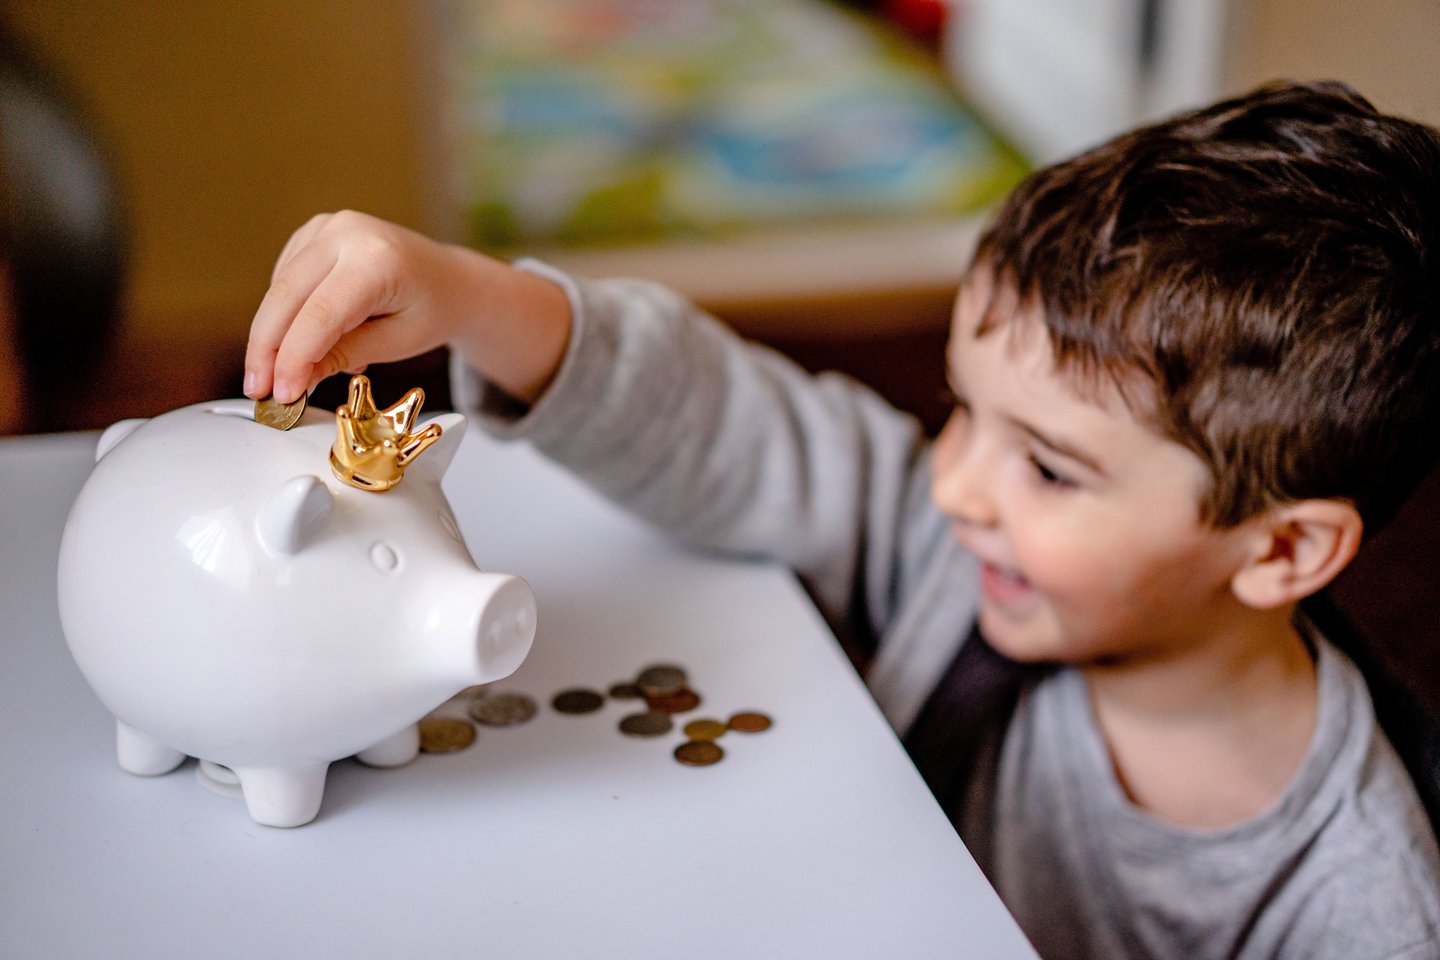 Dažnas ketverių metų vaikas jau gali suprasti skirtumą tarp skirtingų monetų bei kupiūrų.<br>Asociatyvi pexels.com nuotr.